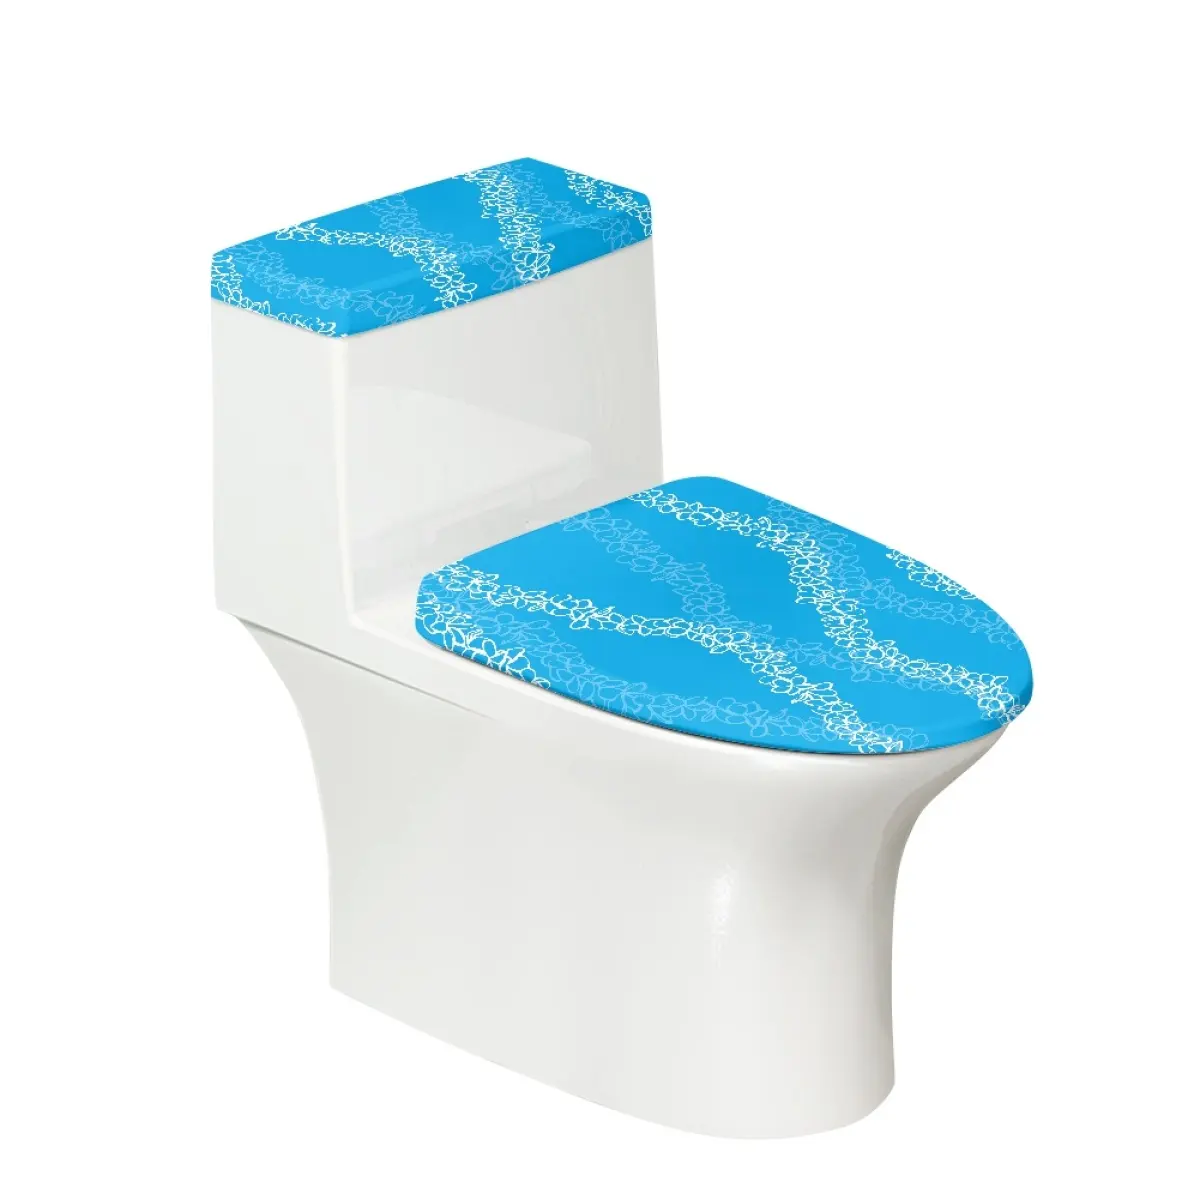 저렴한 가격 도매 사용자 정의 화장실 먼지 커버 세트 Puakenikeni 라인 아트 인쇄 보호 및 장식 화장실 설치하기 쉬운